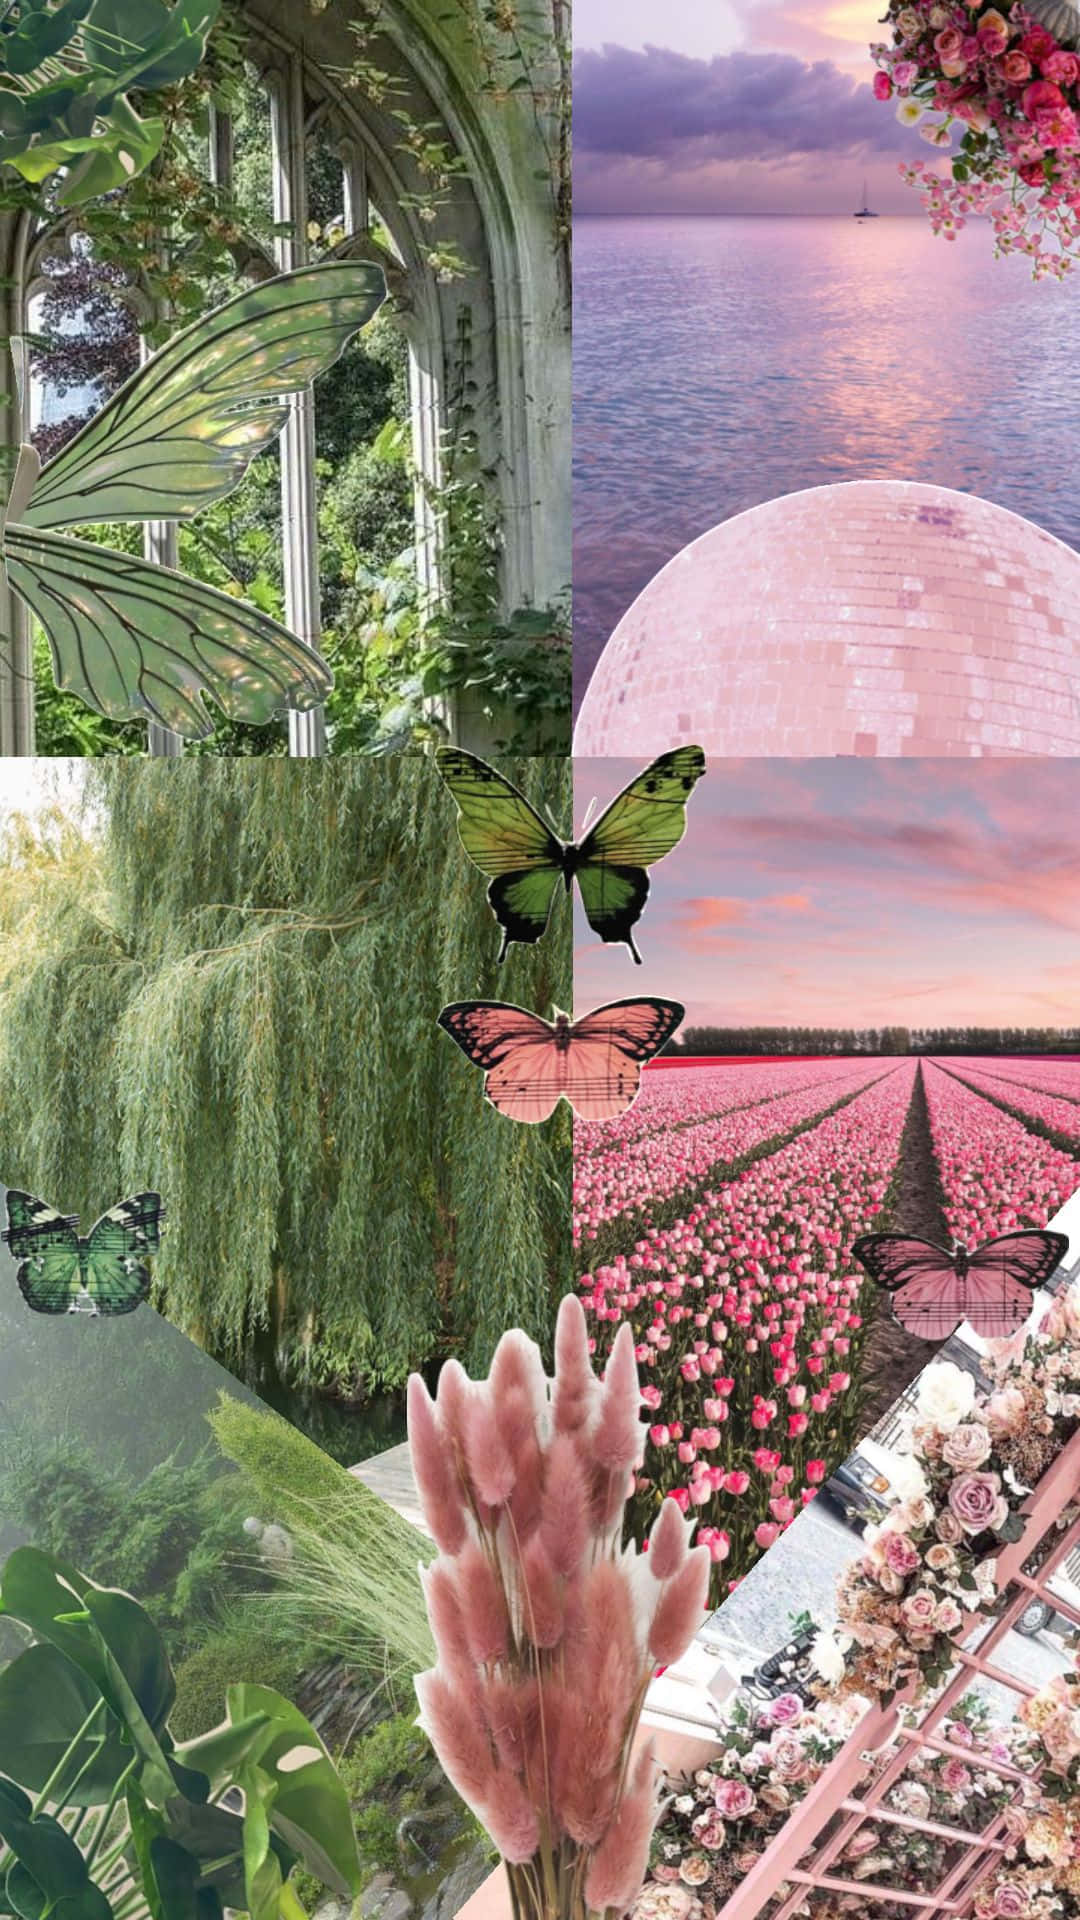  Aesthetic Grün Hintergrundbild 1080x1920. Downloaden Einebezaubernde Mischung Aus Pink Und Grün Für Das Perfekte Ästhetische Erlebnis. Wallpaper